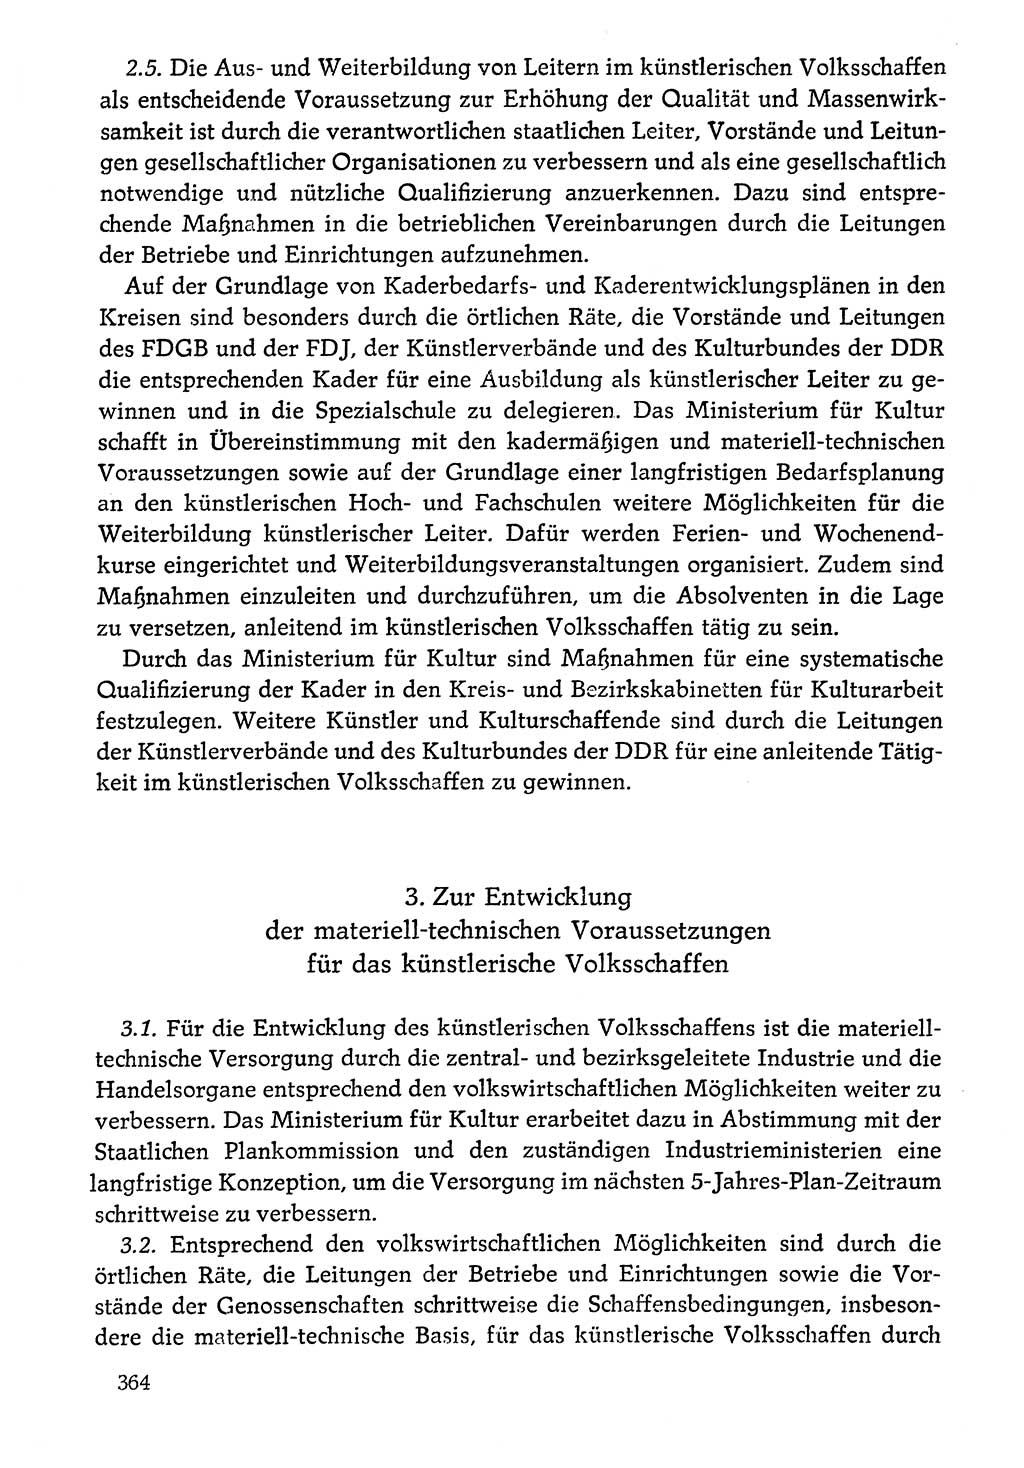 Dokumente der Sozialistischen Einheitspartei Deutschlands (SED) [Deutsche Demokratische Republik (DDR)] 1976-1977, Seite 364 (Dok. SED DDR 1976-1977, S. 364)